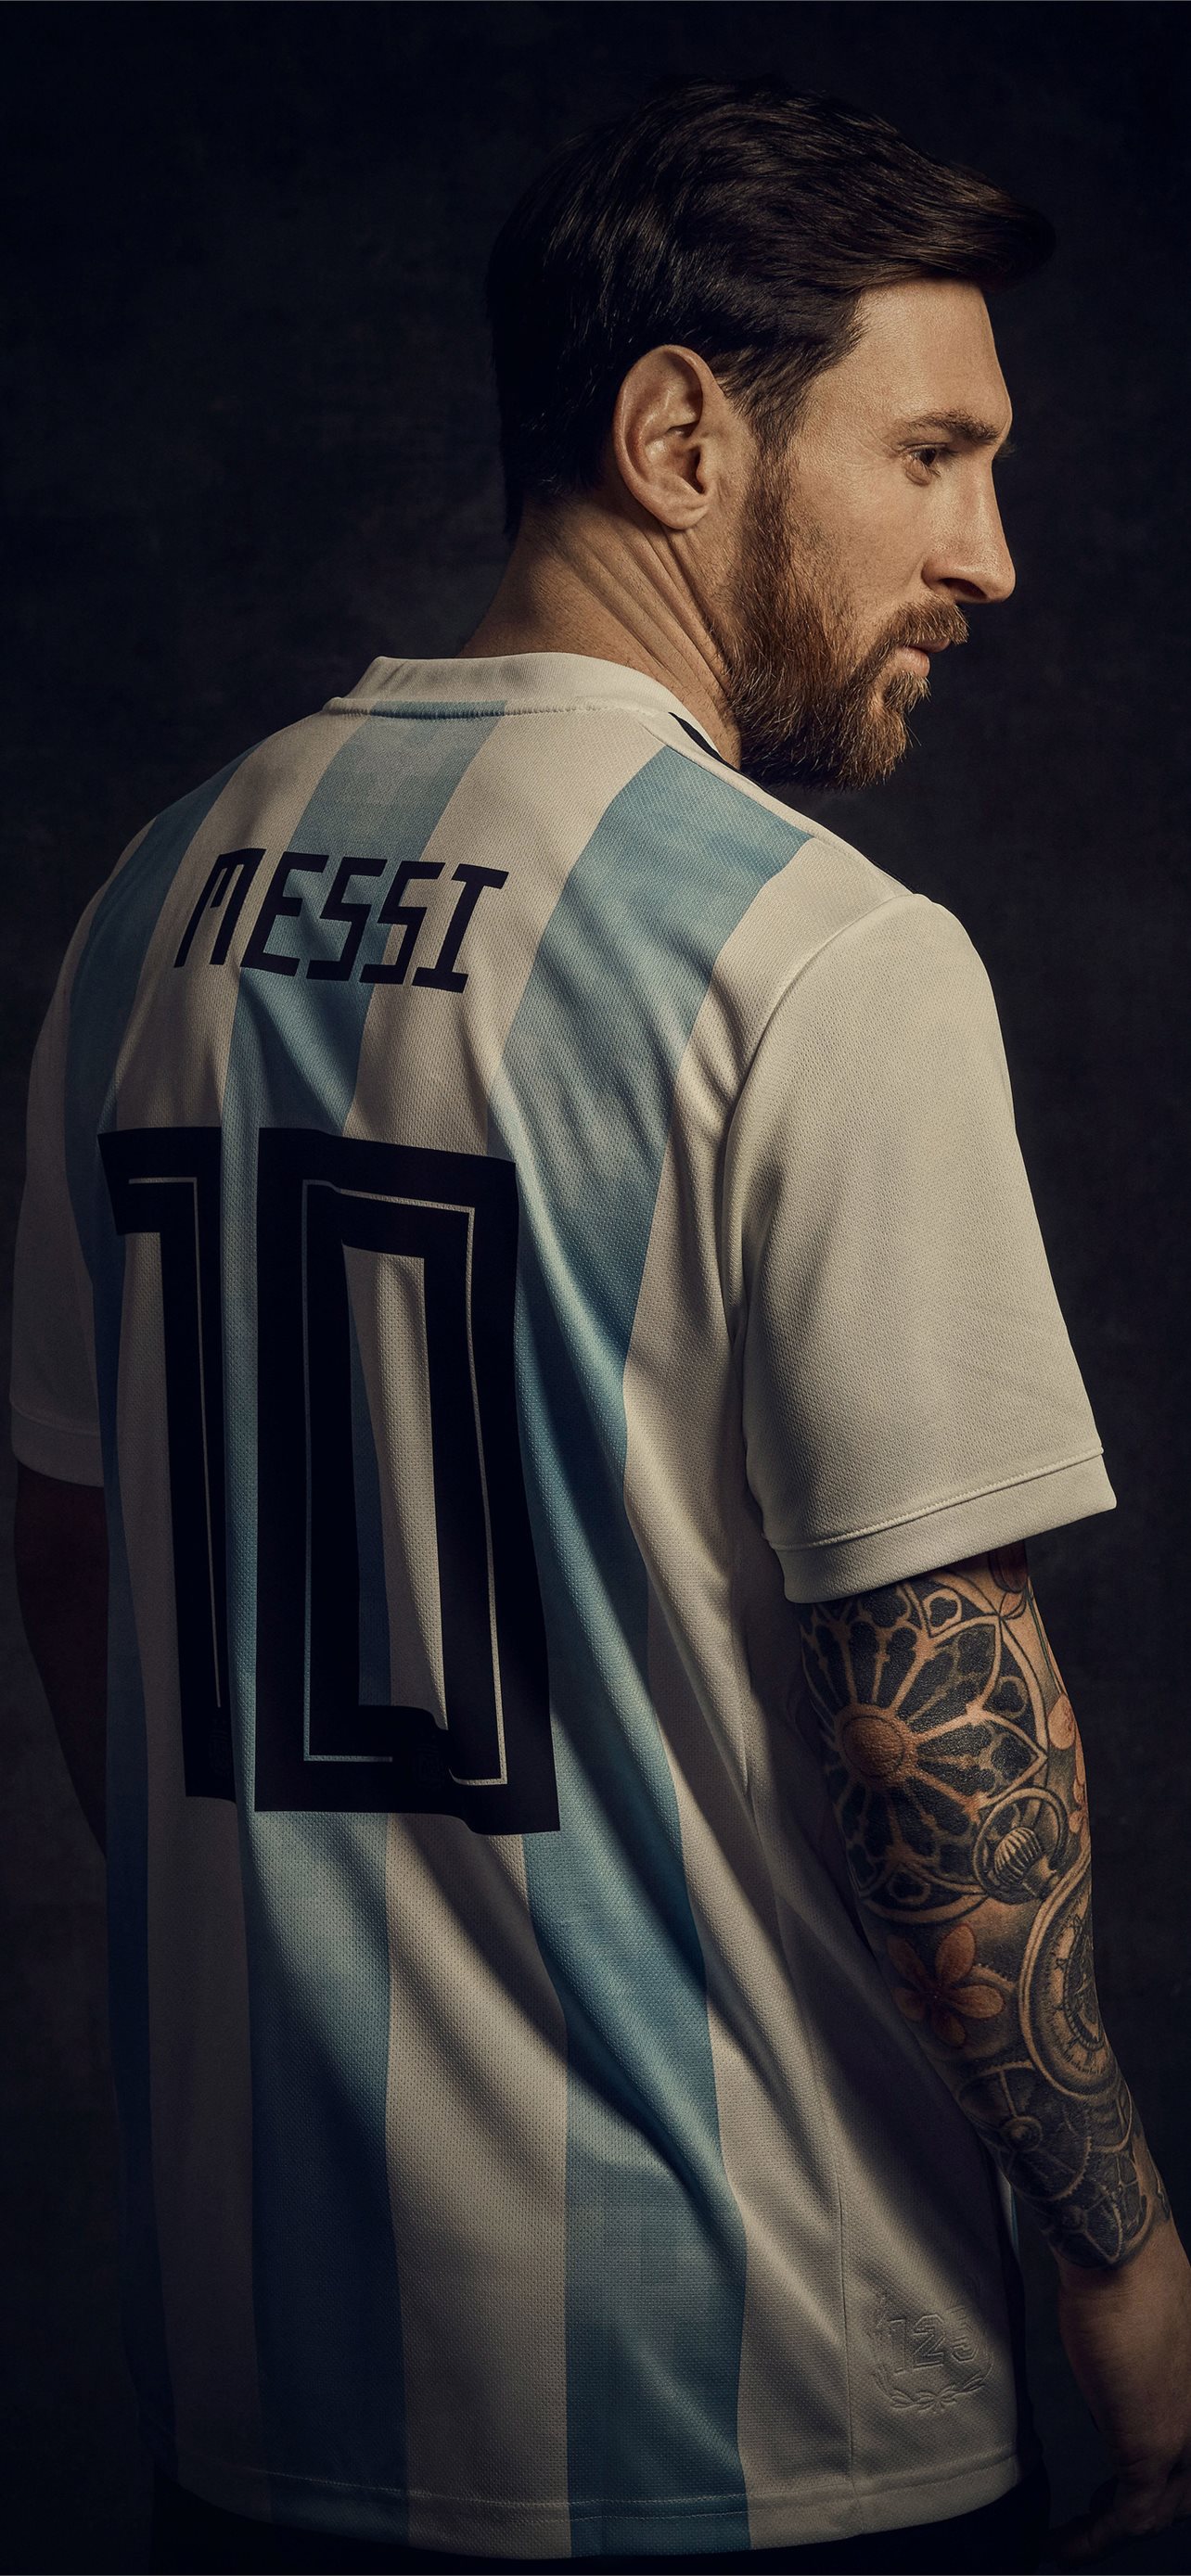 Messi wallpaper: Hình nền với huyền thoại bóng đá Messi sẽ làm say đắm các fan hâm mộ. Với độ phân giải cao, các chi tiết về siêu sao này sẽ rõ nét trên màn hình điện thoại của bạn. Hãy cập nhật hình nền Messi mới nhất và trưng bày niềm đam mê với bóng đá của bạn.